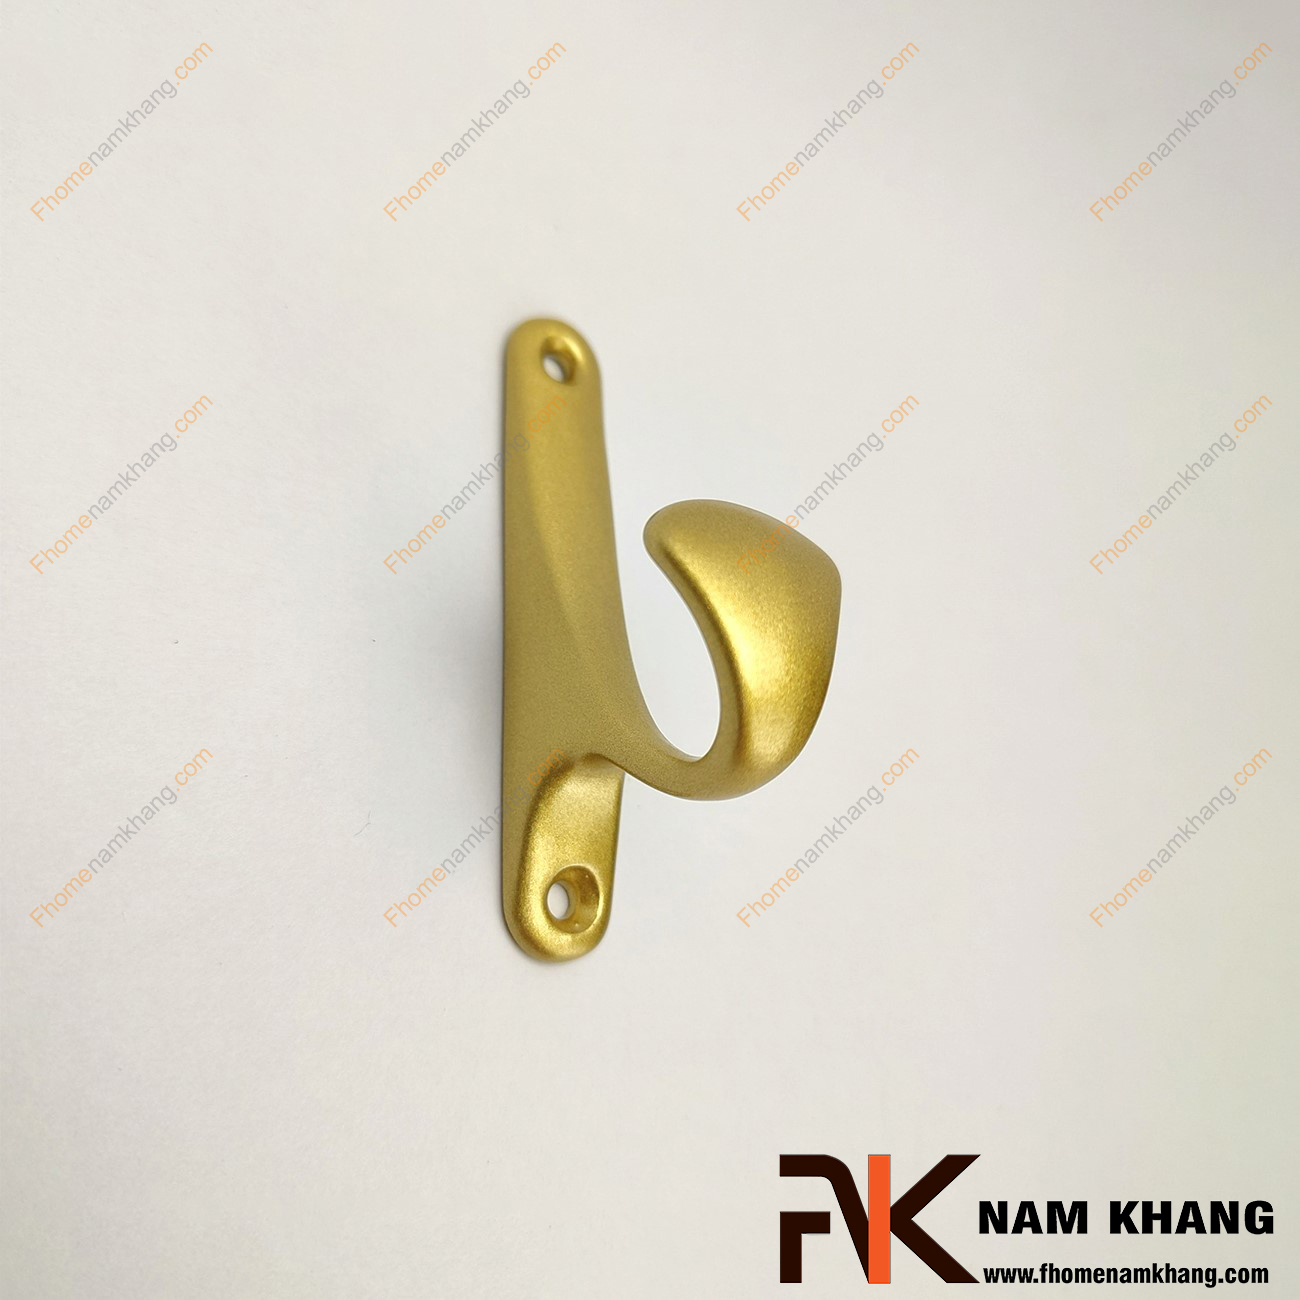 Móc treo tường dạng đơn thông dụng màu vàng mờ NK121N-V- dòng móc treo nhỏ gọn thường được sử dụng treo móc nhiều dạng sản phẩm và có thể sử dụng để trang trí.